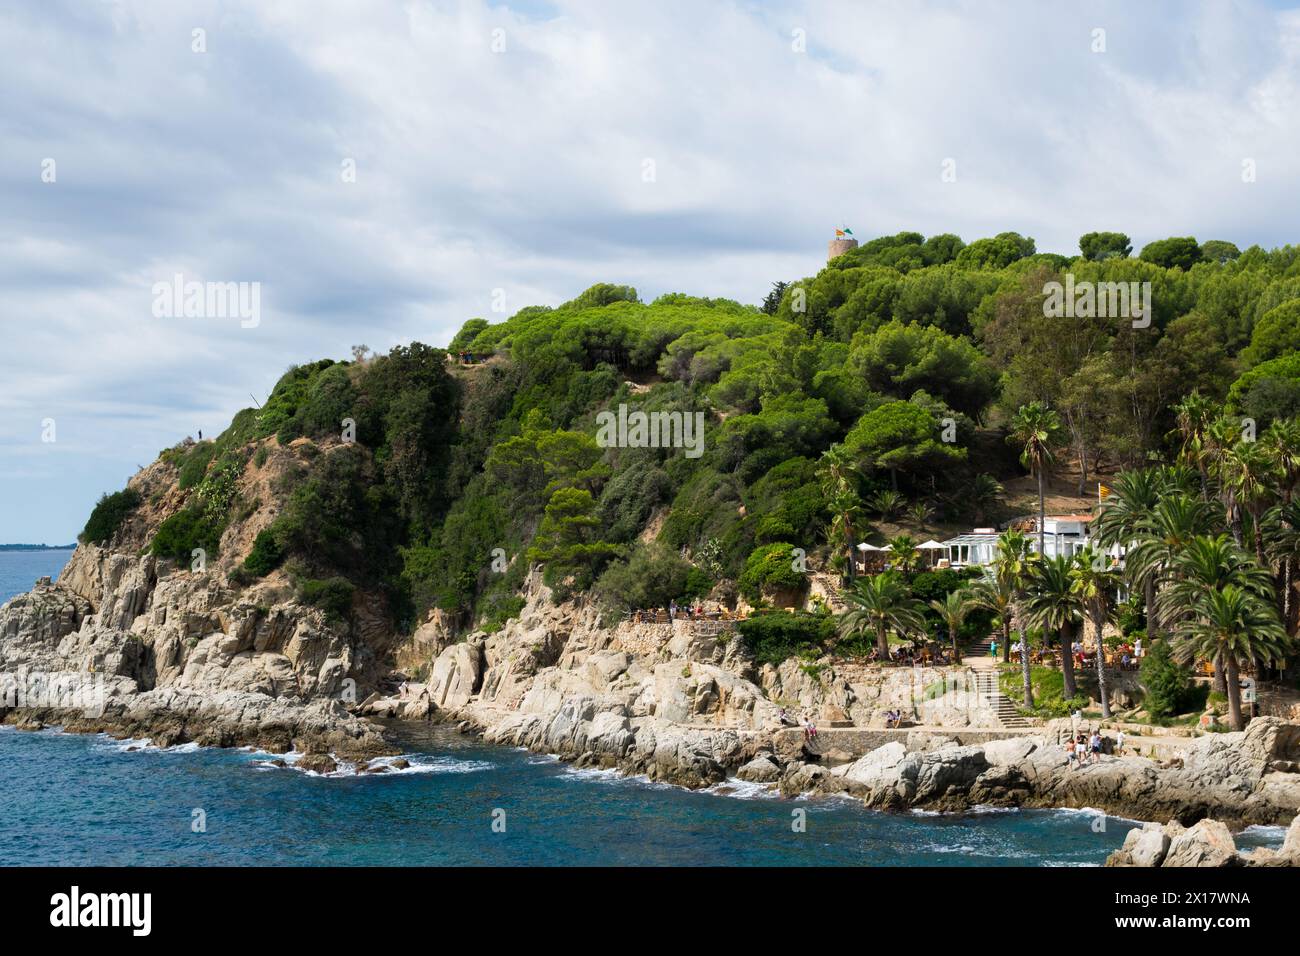 Hotel auf der Insel mit Palmen, Café, Menschen an der Küste. Panorama-Luftaufnahme der sealine in Spanien. Stockfoto